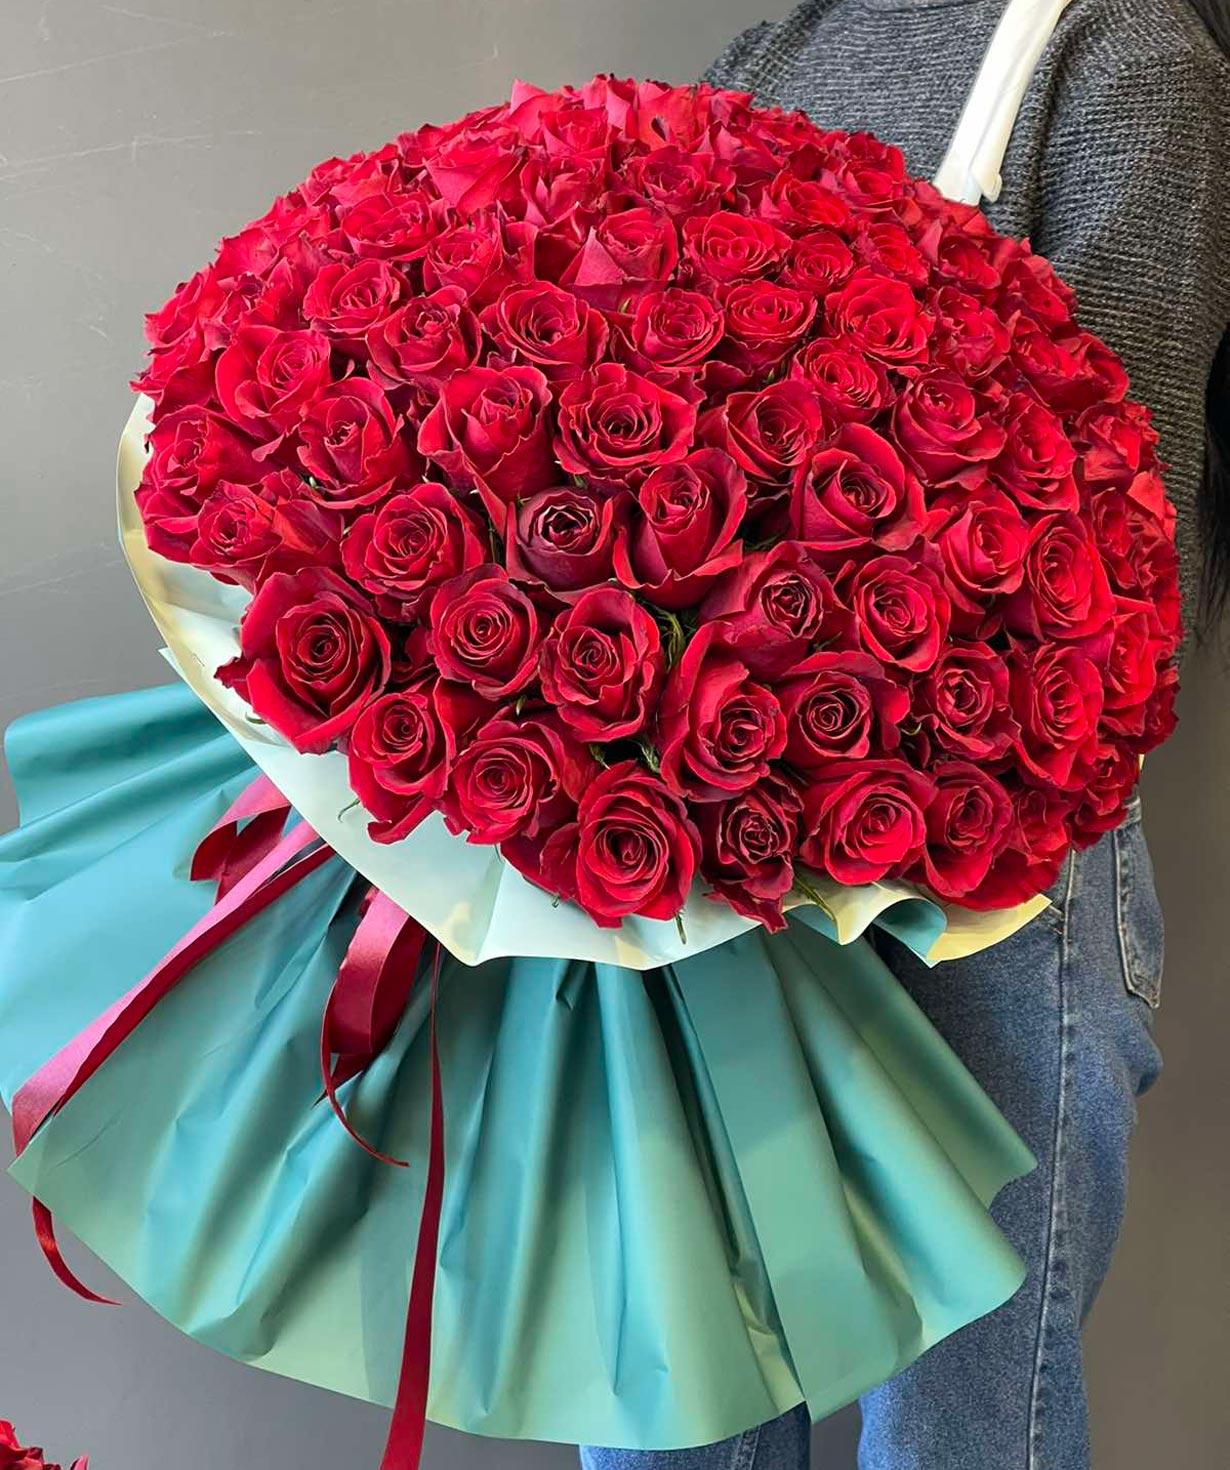 Bouquet `Perdigera` with Ecuadorian roses